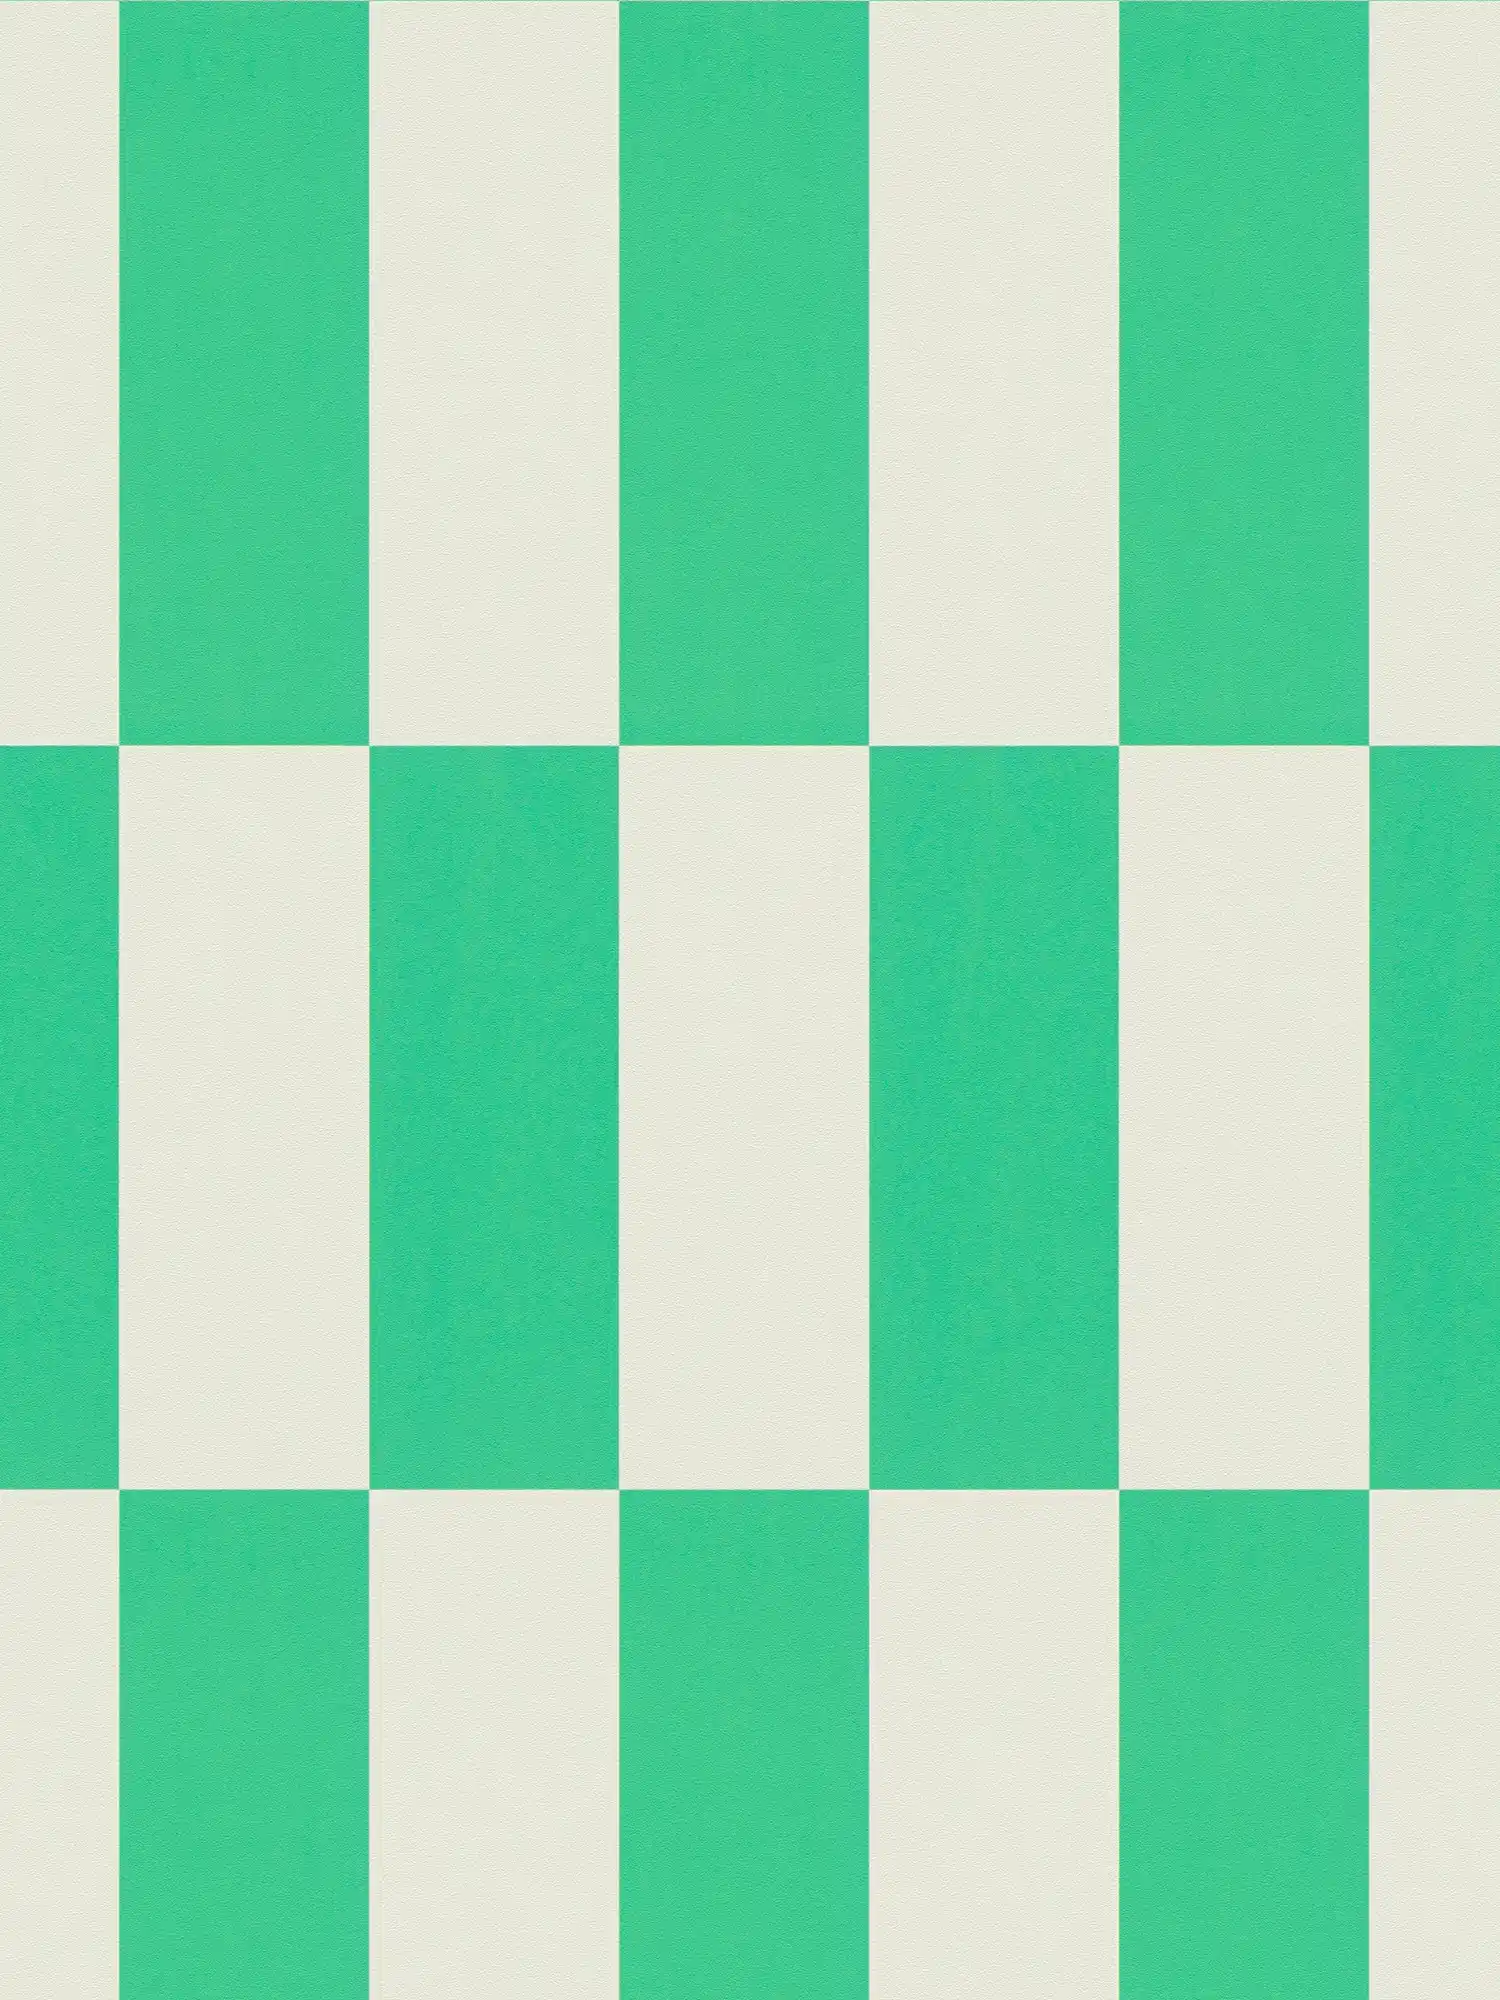 Patroonbehang met vierkantjes grafisch patroon - groen, wit
